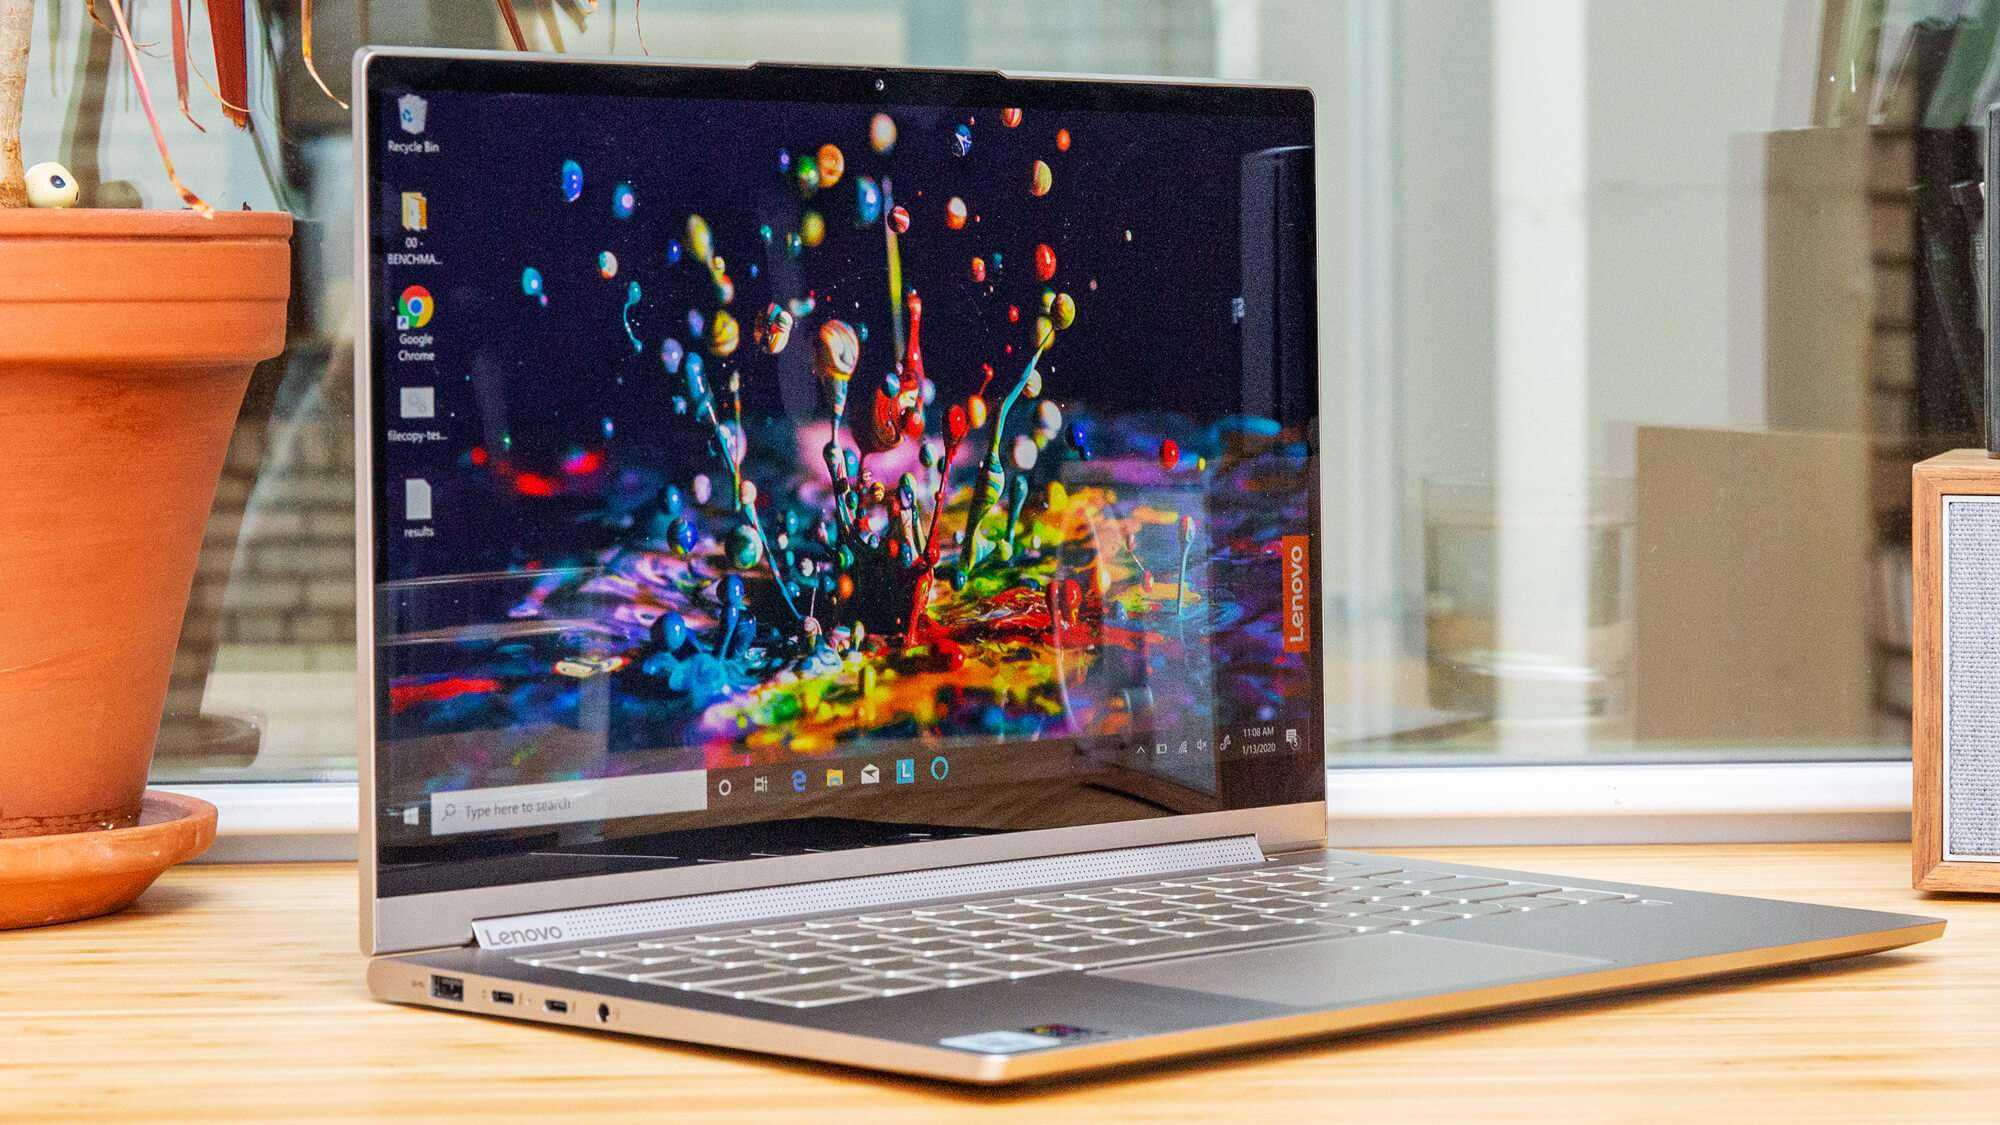 Tổng hợp 15 laptop tốt nhất cho Sinh viên 2020 - Laptop Titan